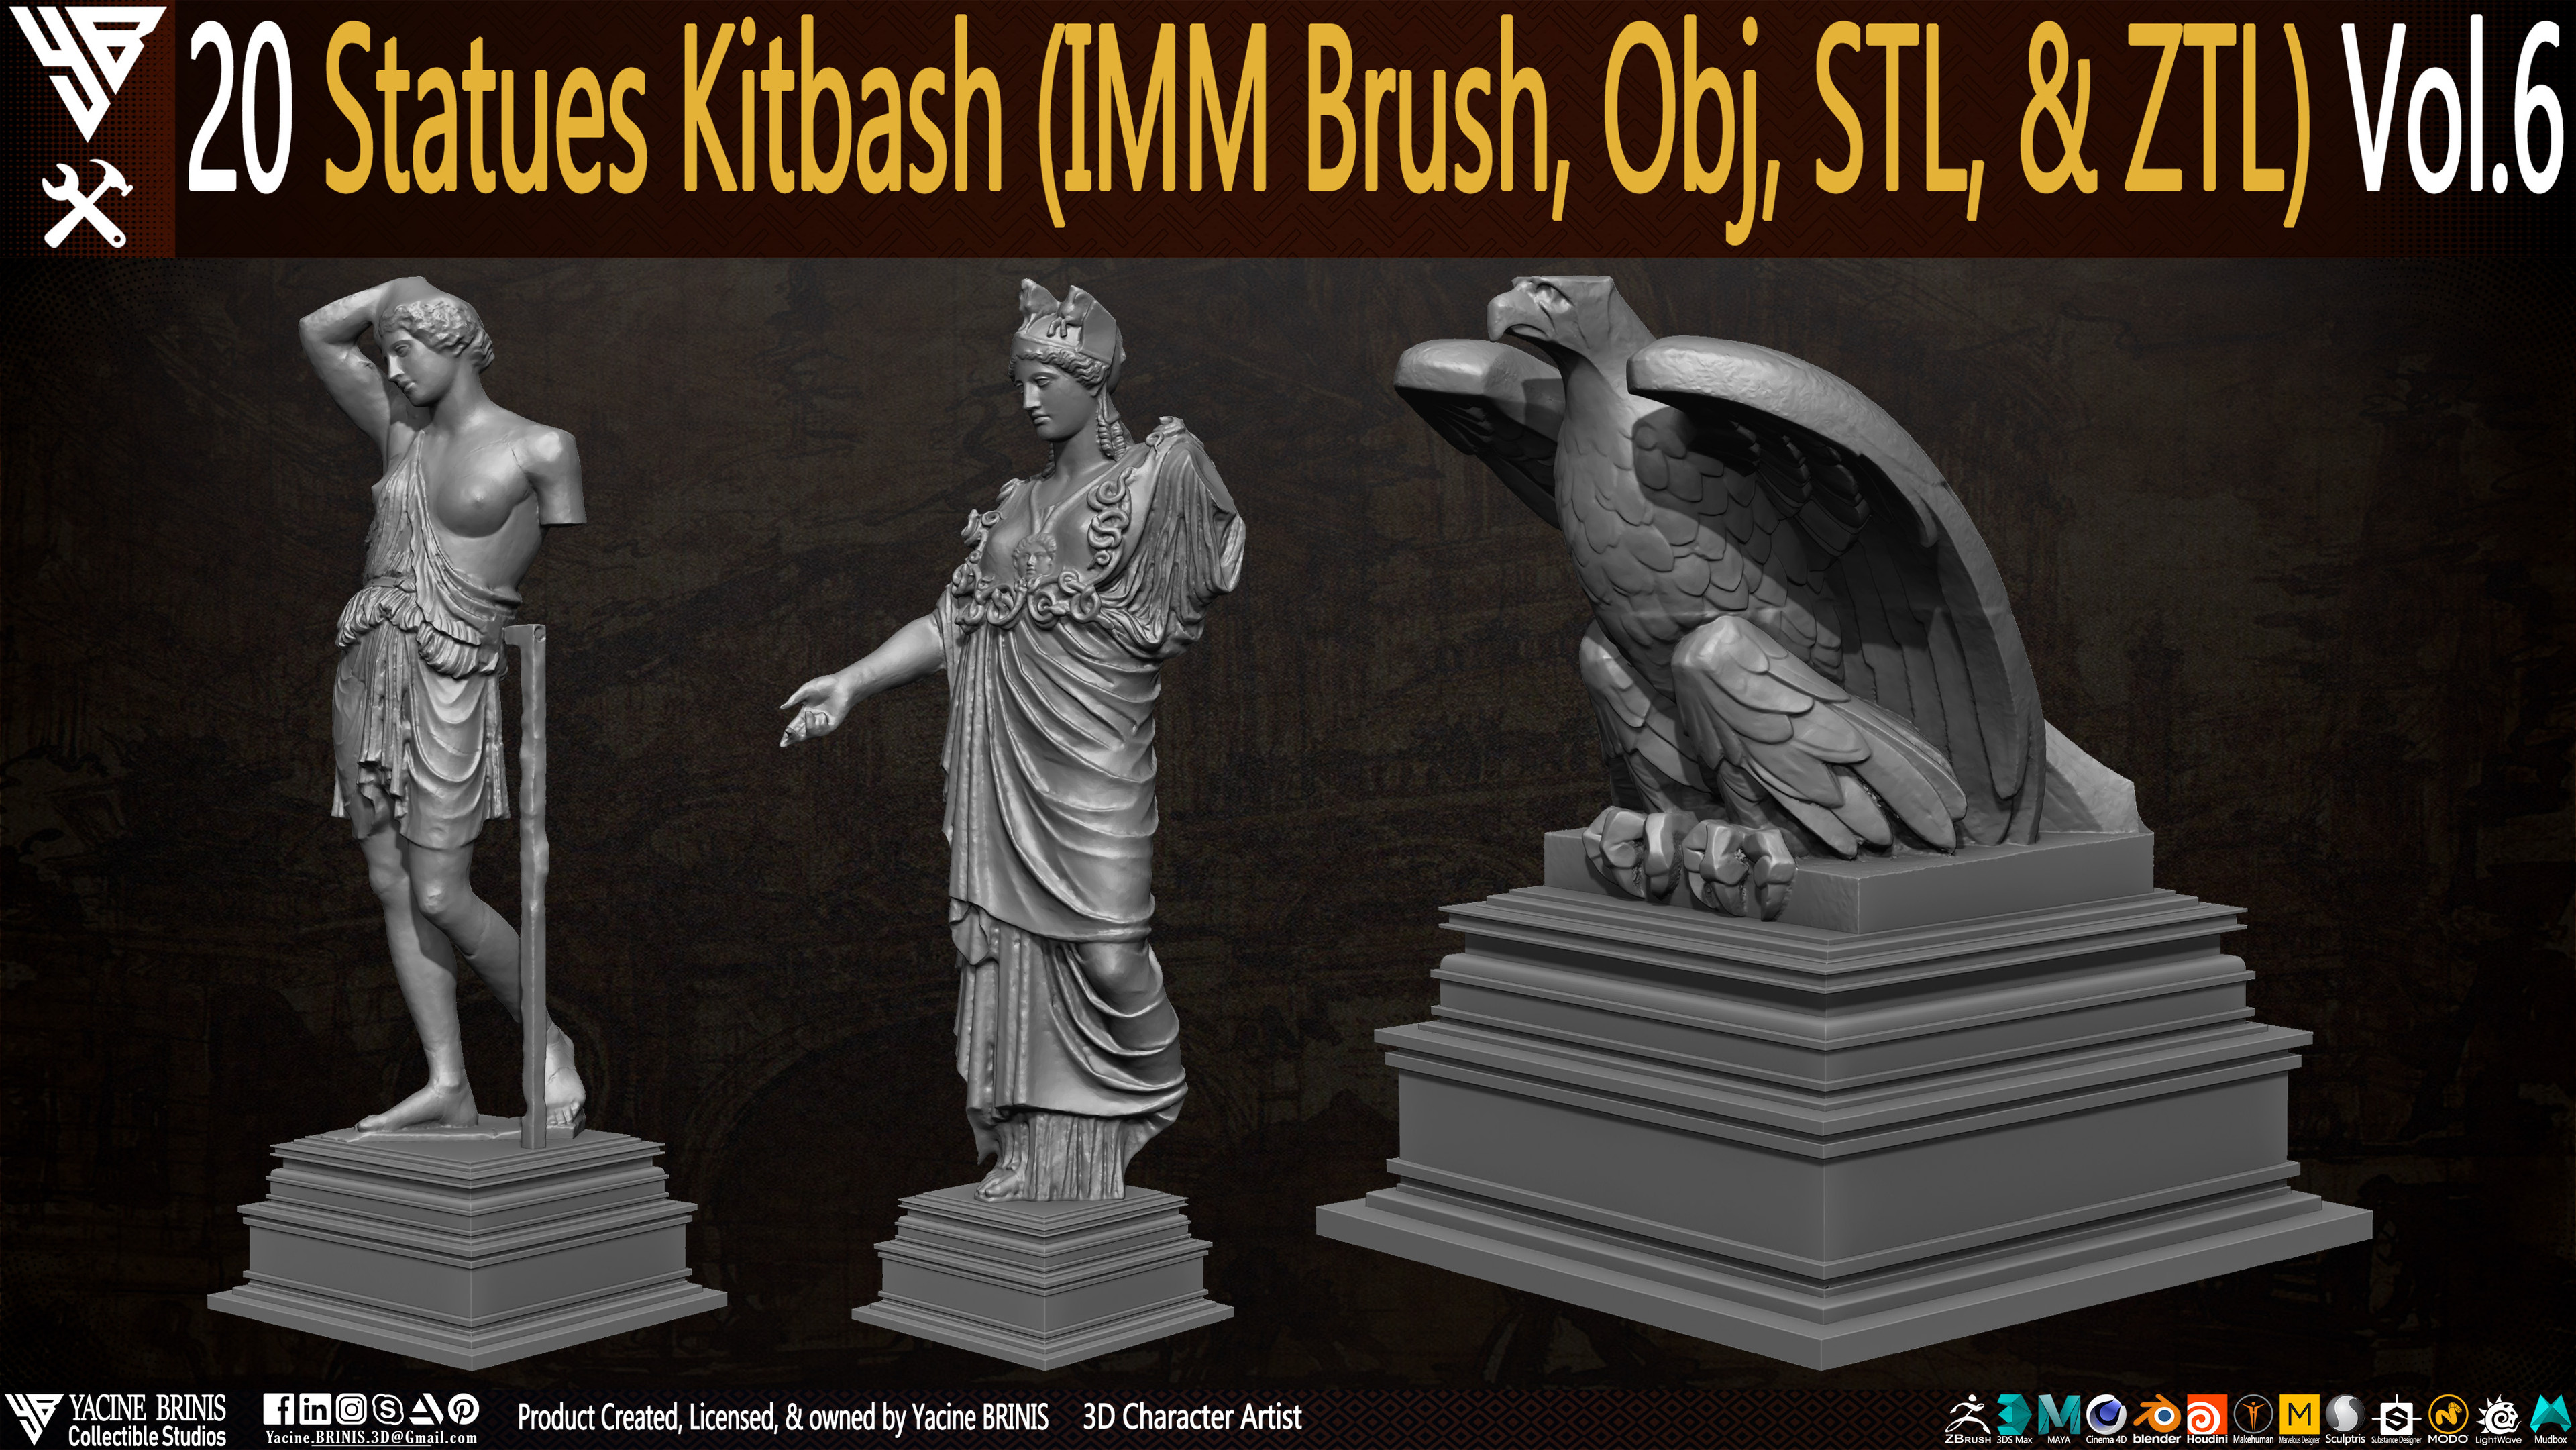 Statues Kitbash by yacine brinis Set 35